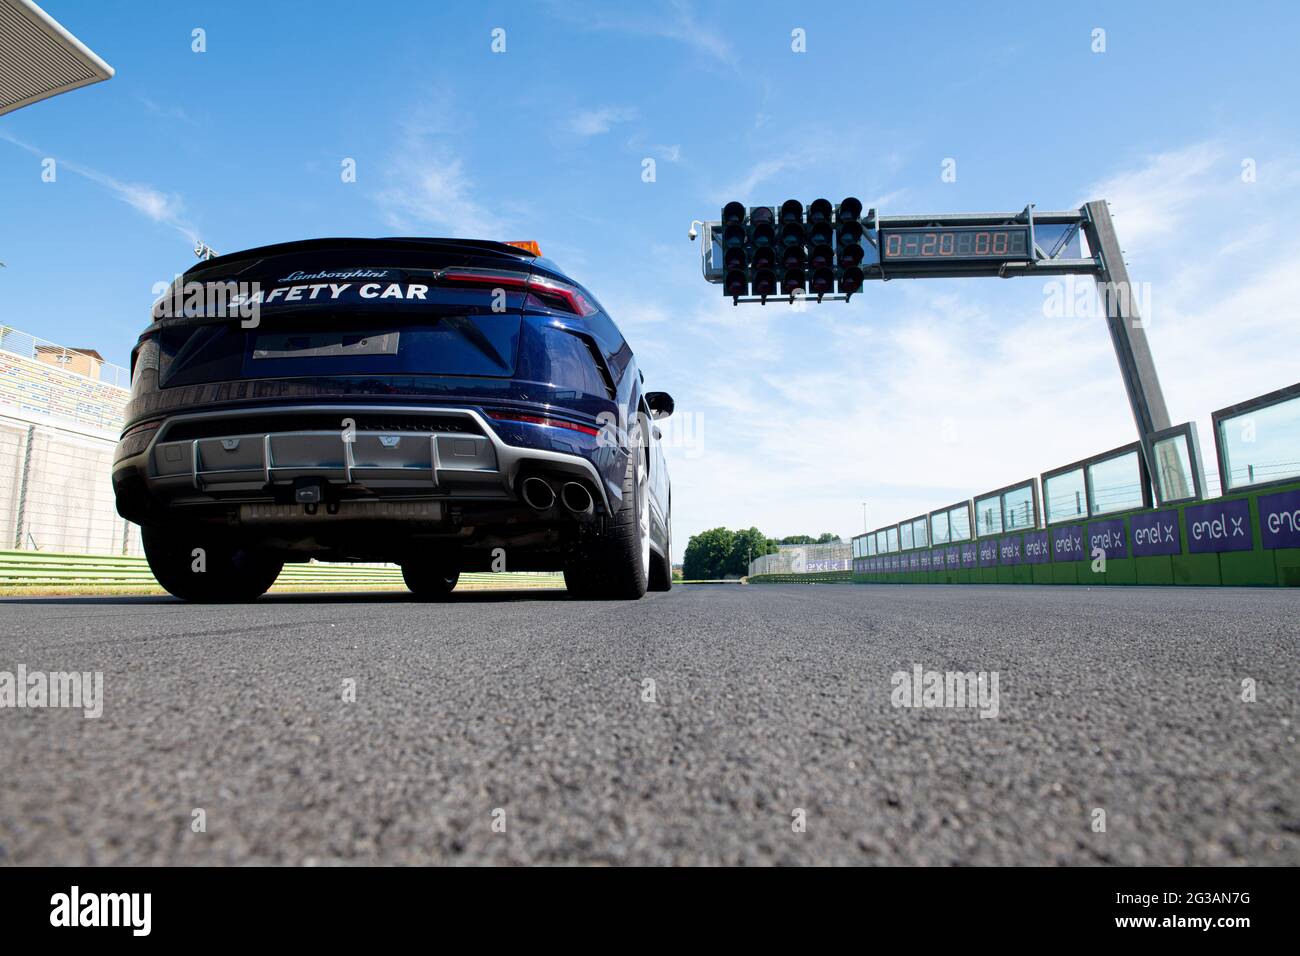 Vallelunga giugno 13 2021, serie Fx Racing. Lamborghini safety car sul circuito asfalto linea di partenza, vista in piano Foto Stock